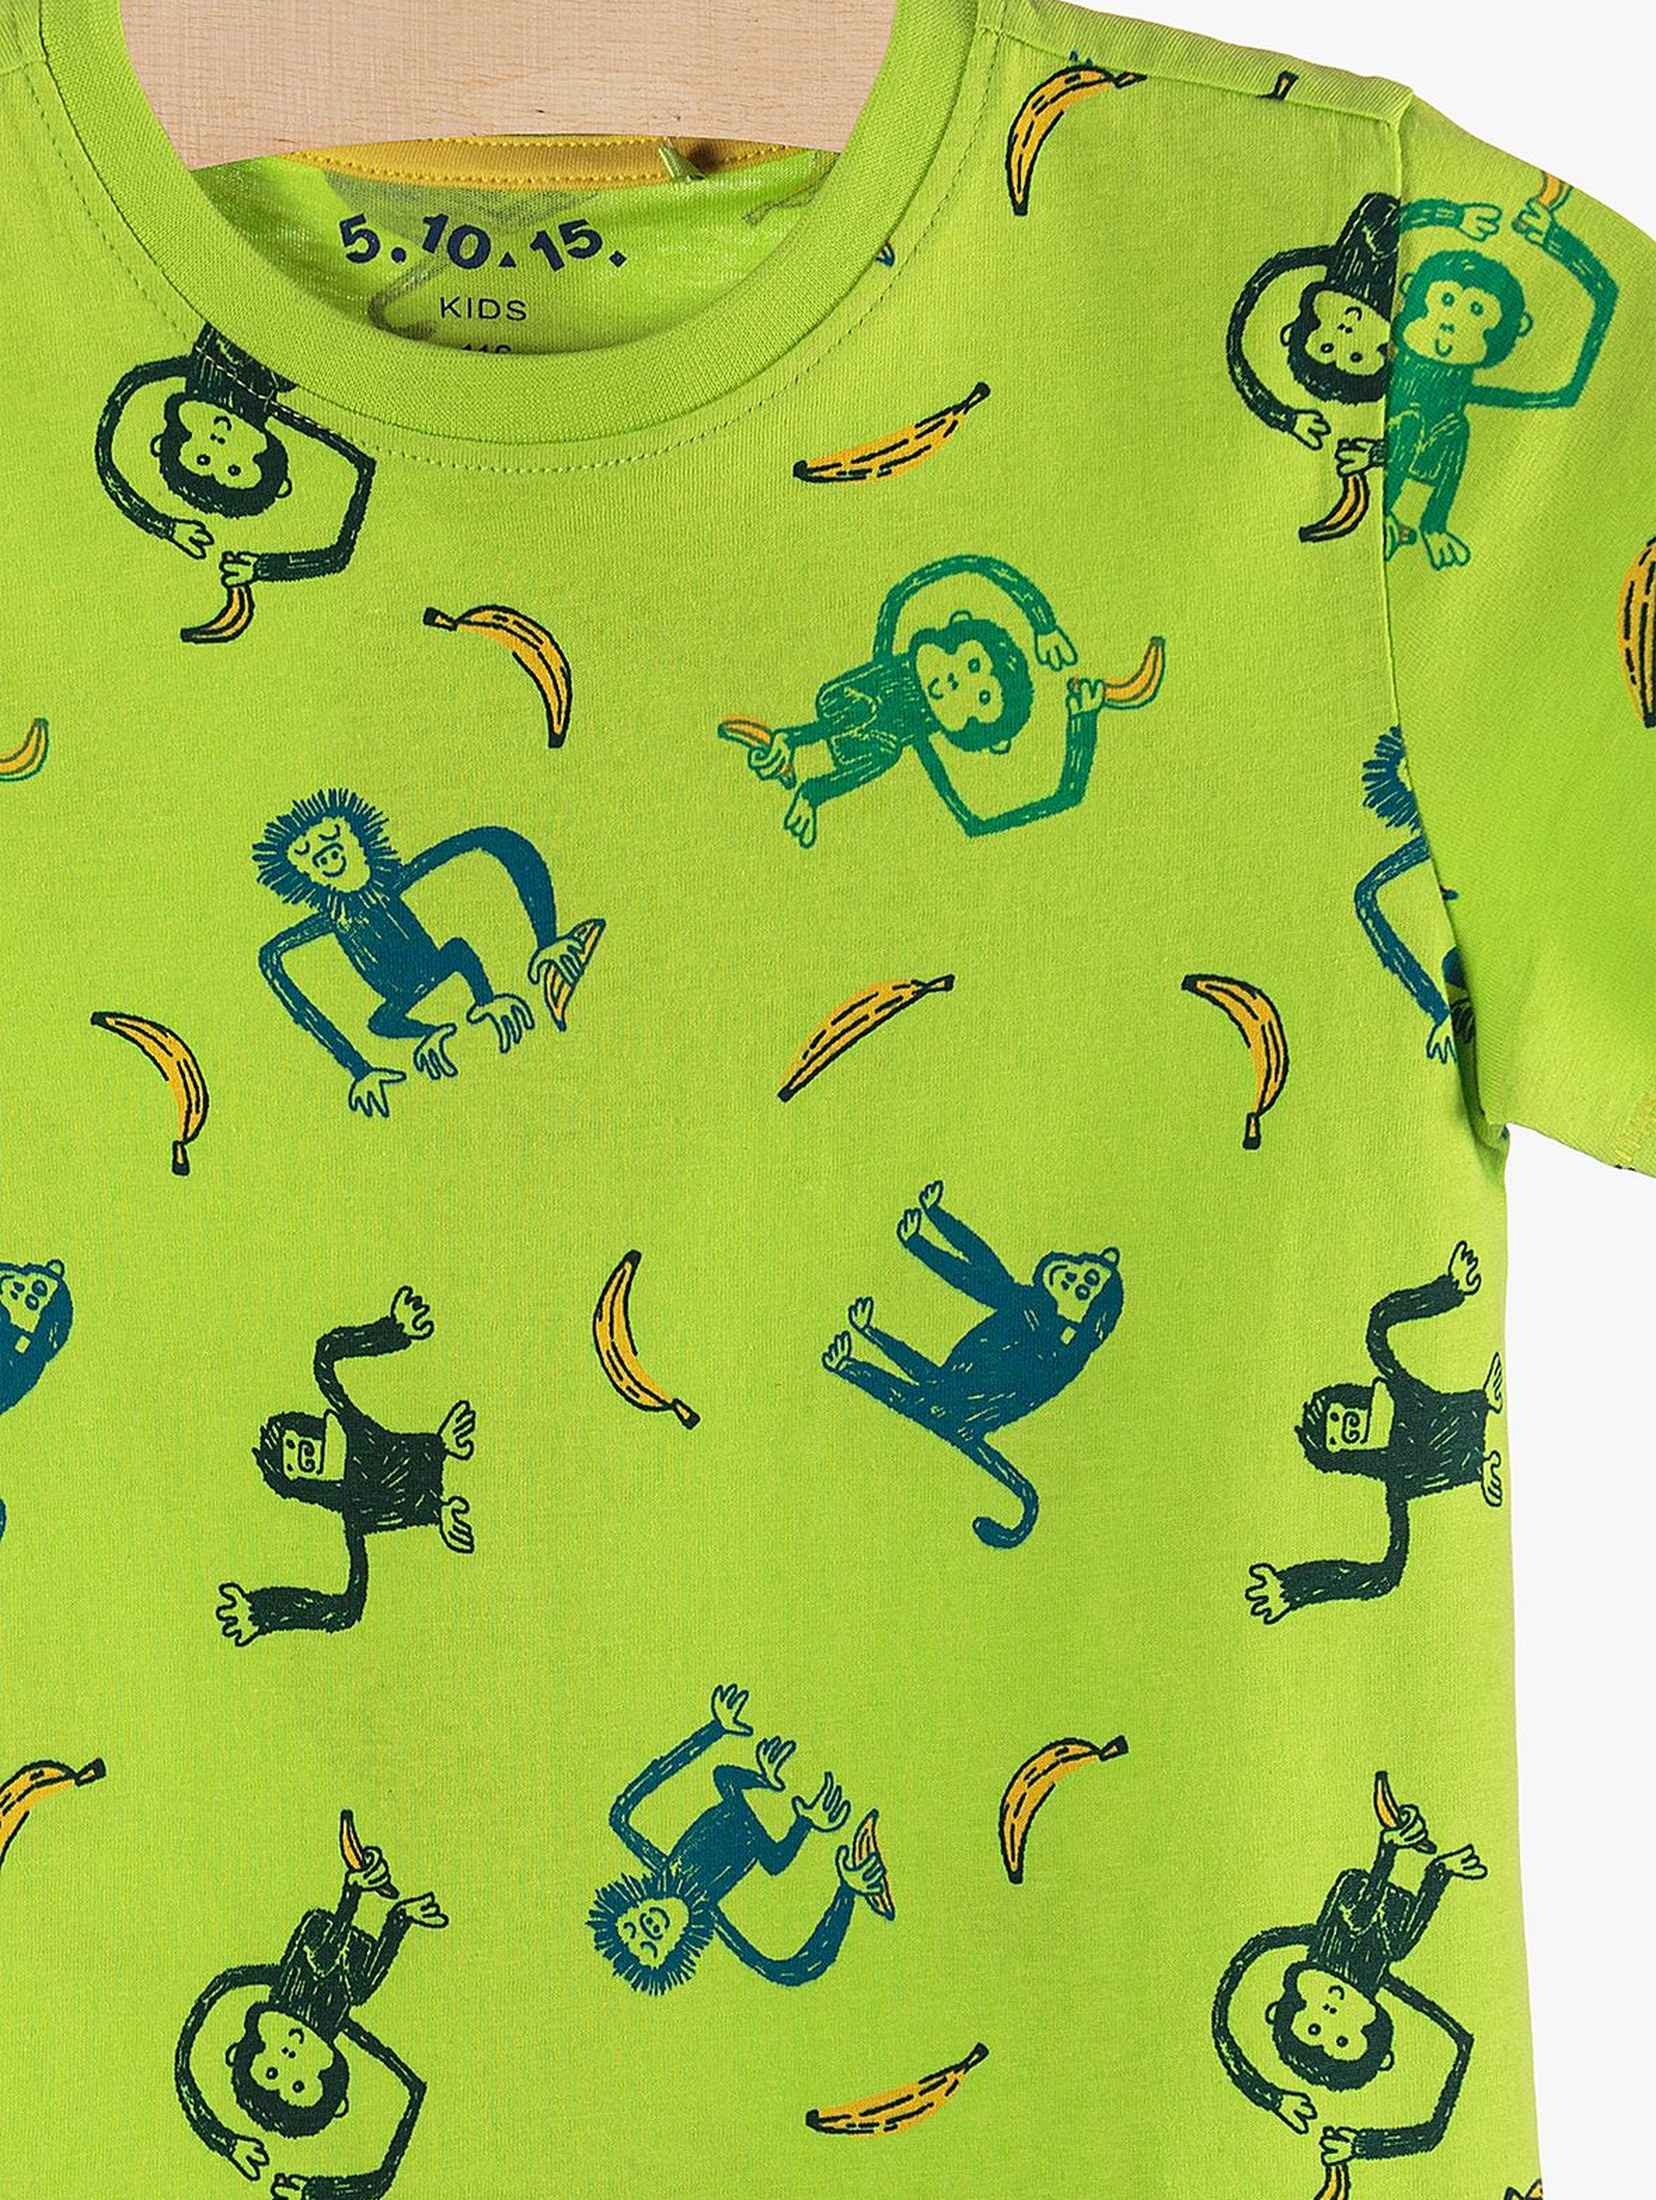 T-shirt chłopięcy zielony w małpki